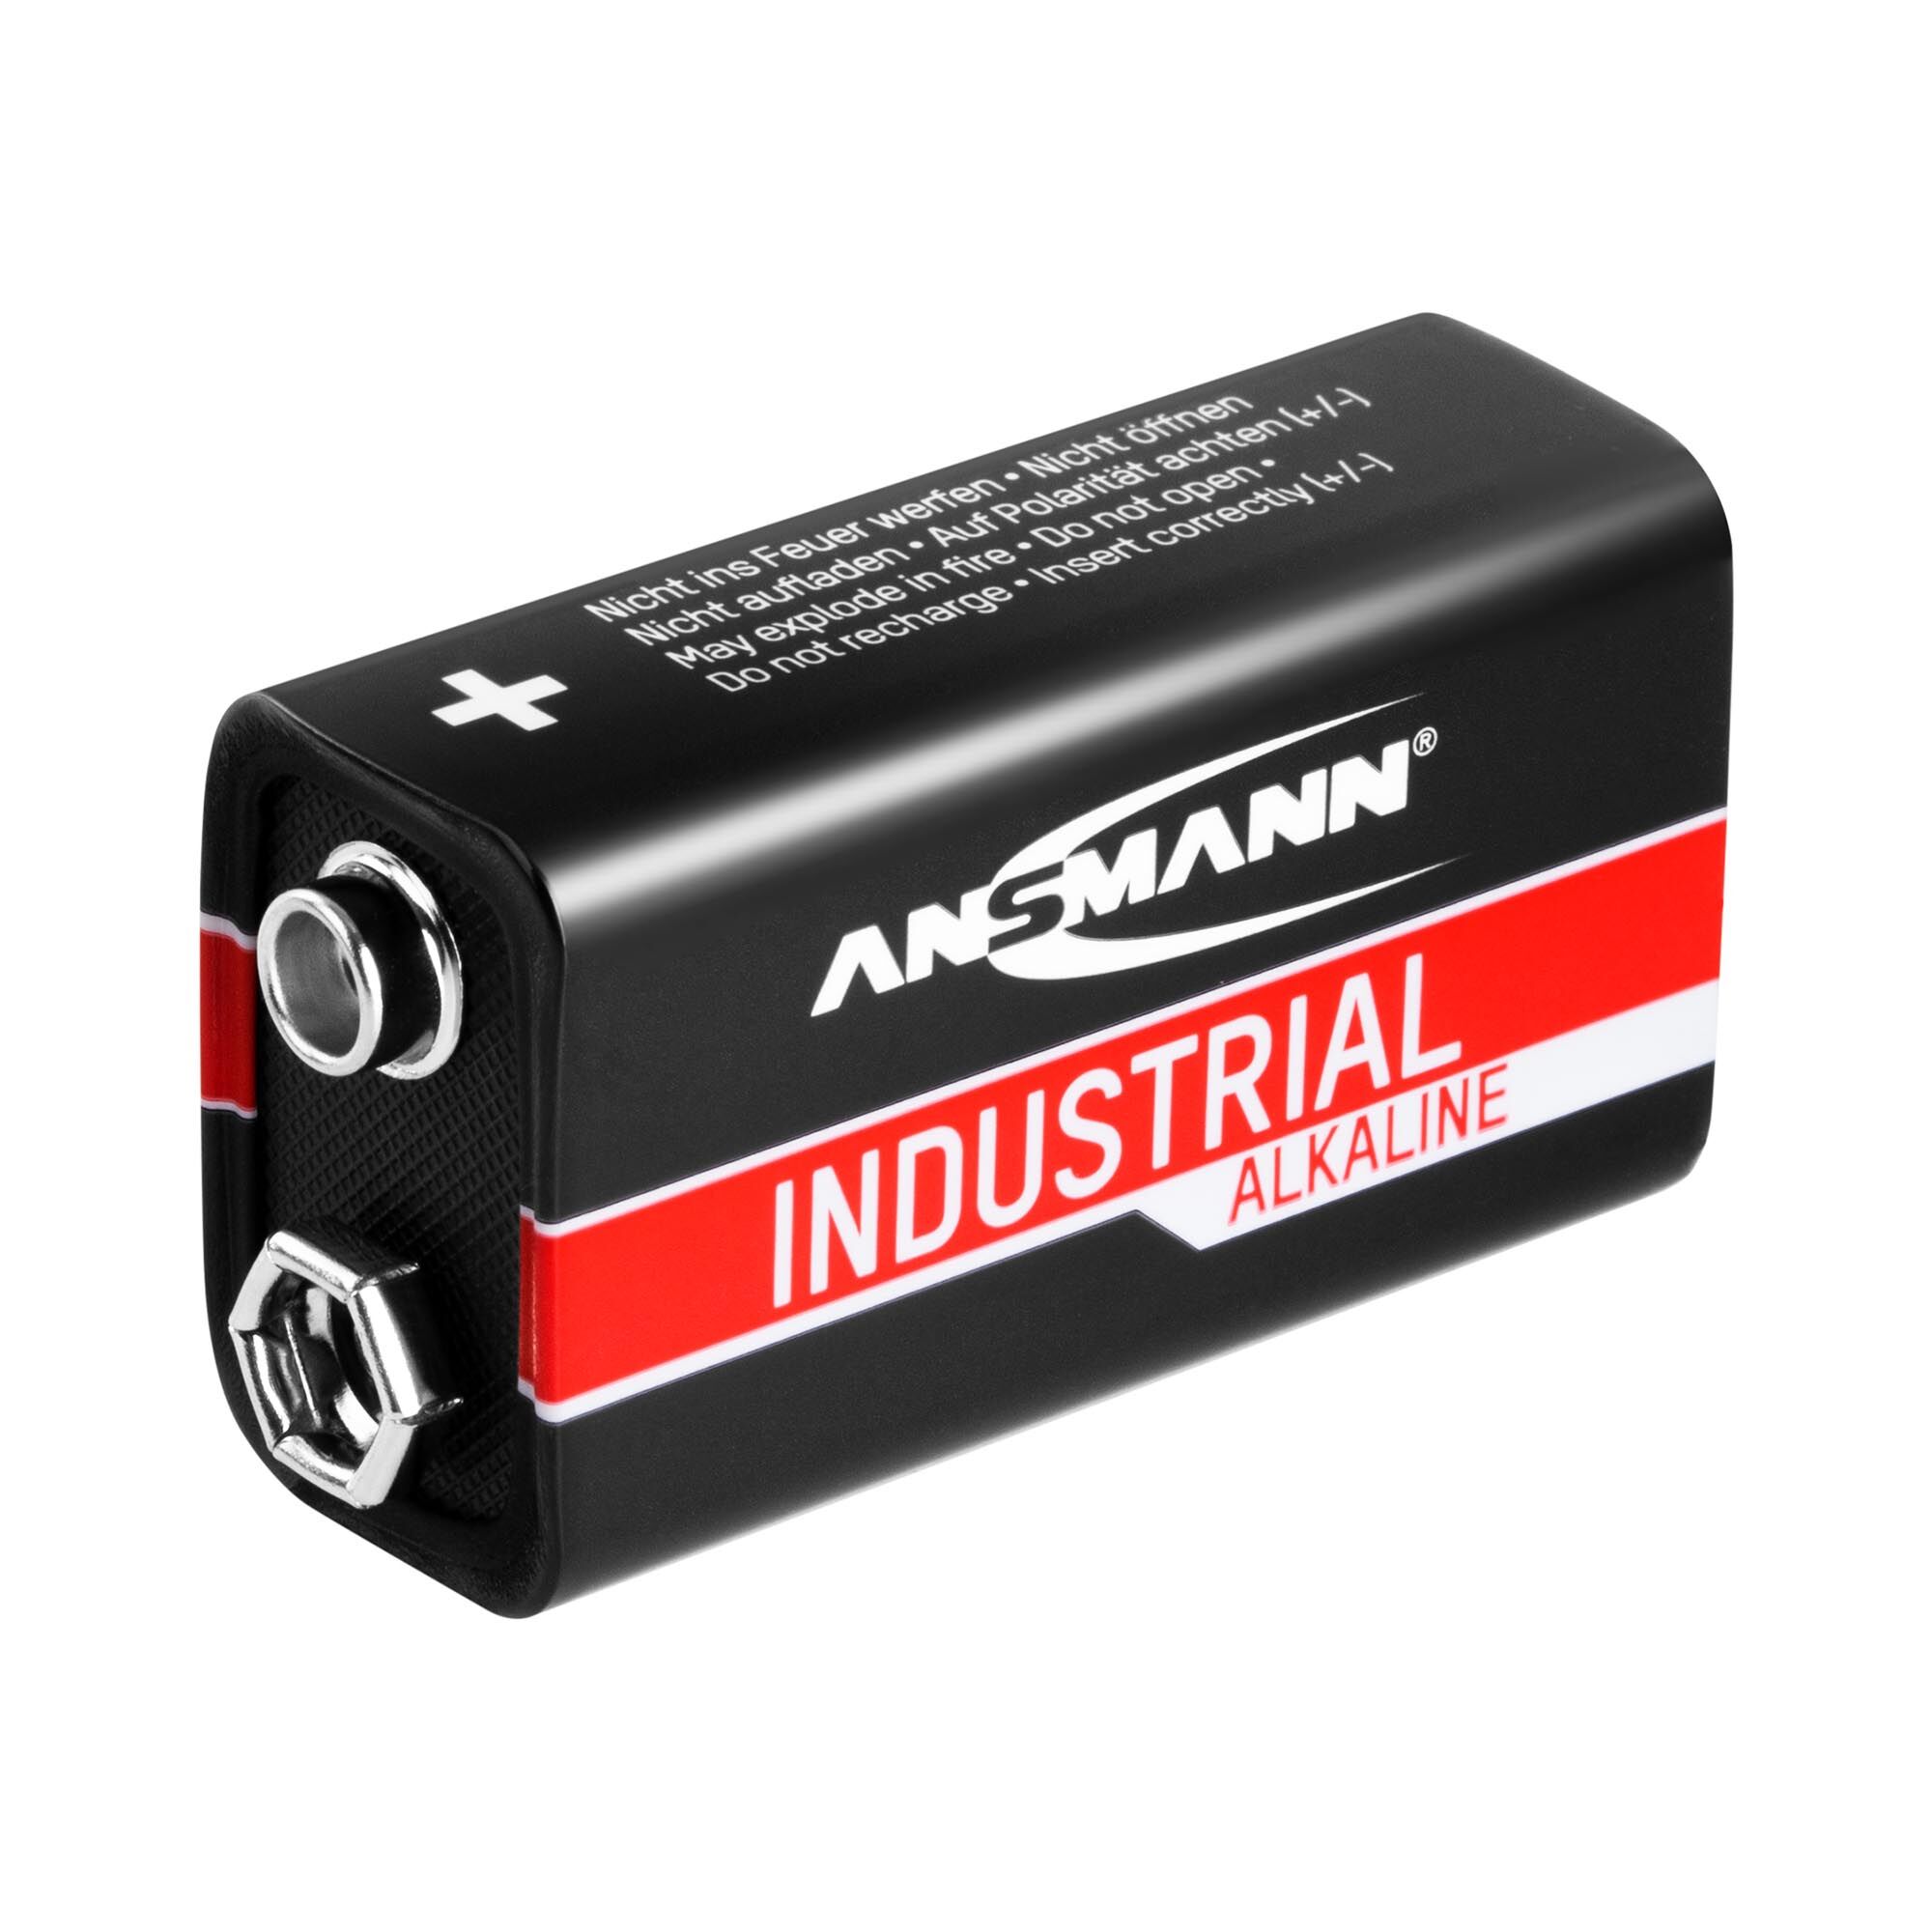 Ansmann INDUSTRIAL batterie alcaline - 10 batterie monoblocco 6LR61 1505-0001